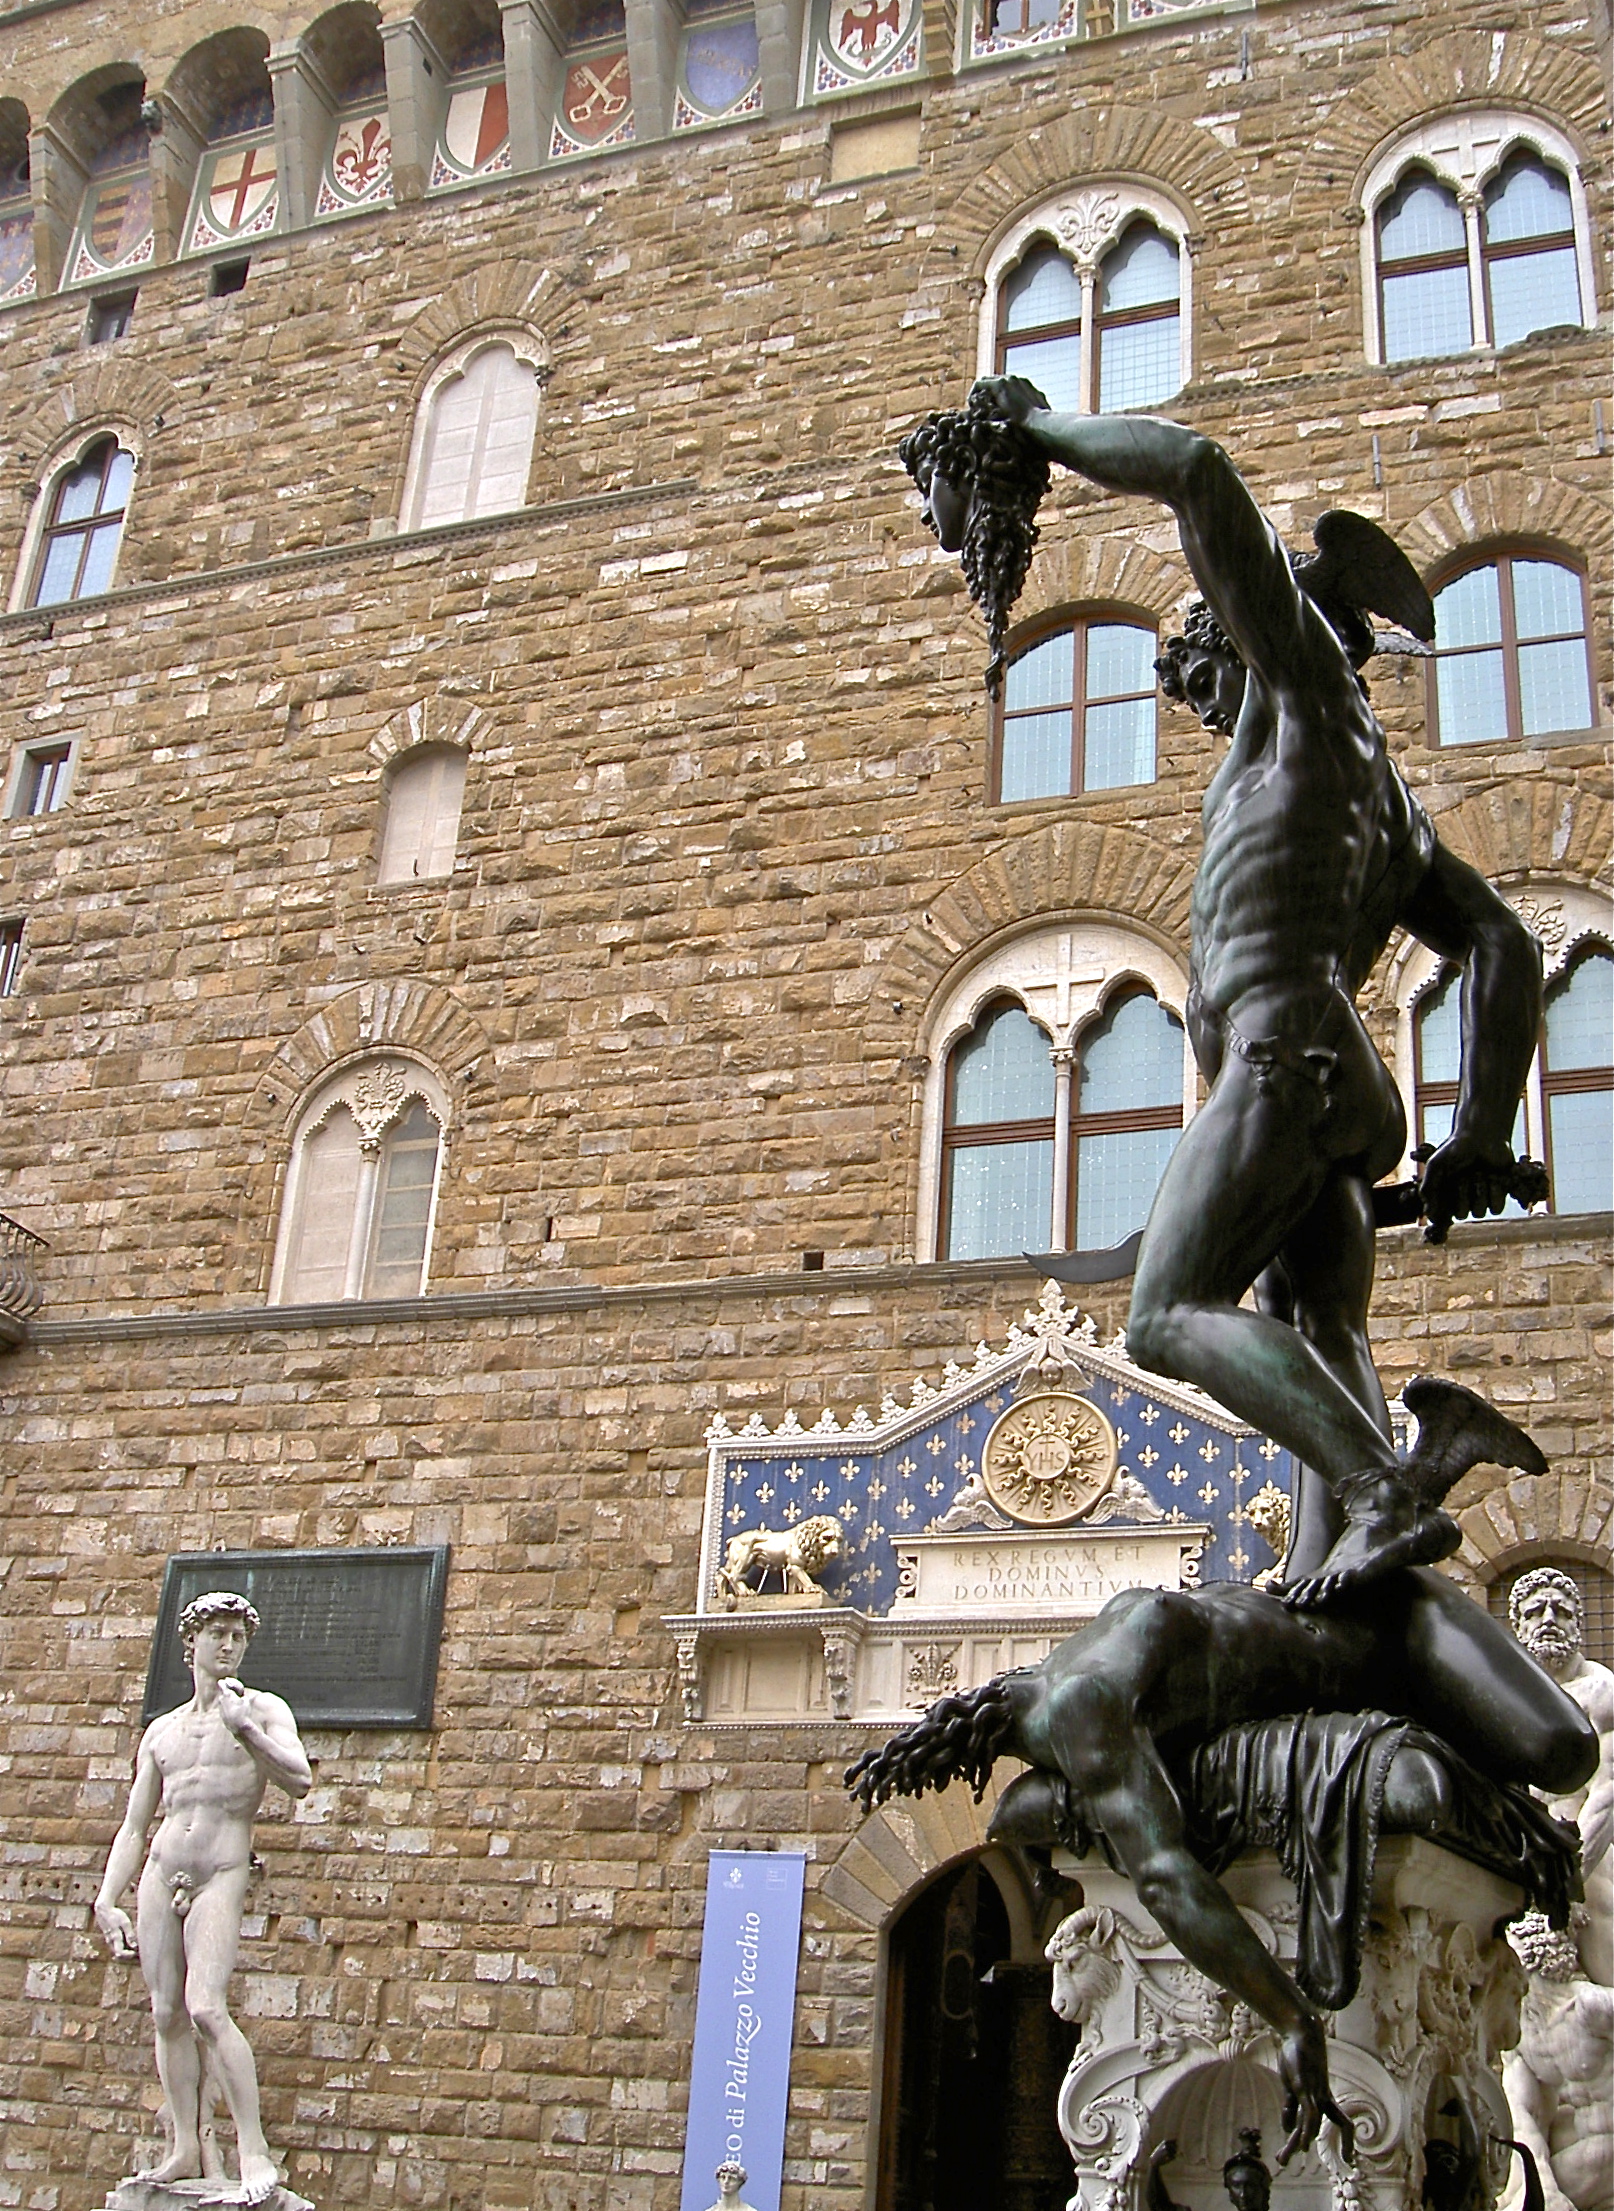 Benvenuto Cellini, Perseus with the Head of Medusa, 1545-1554, Piazza della Signora, Florence, Italy.